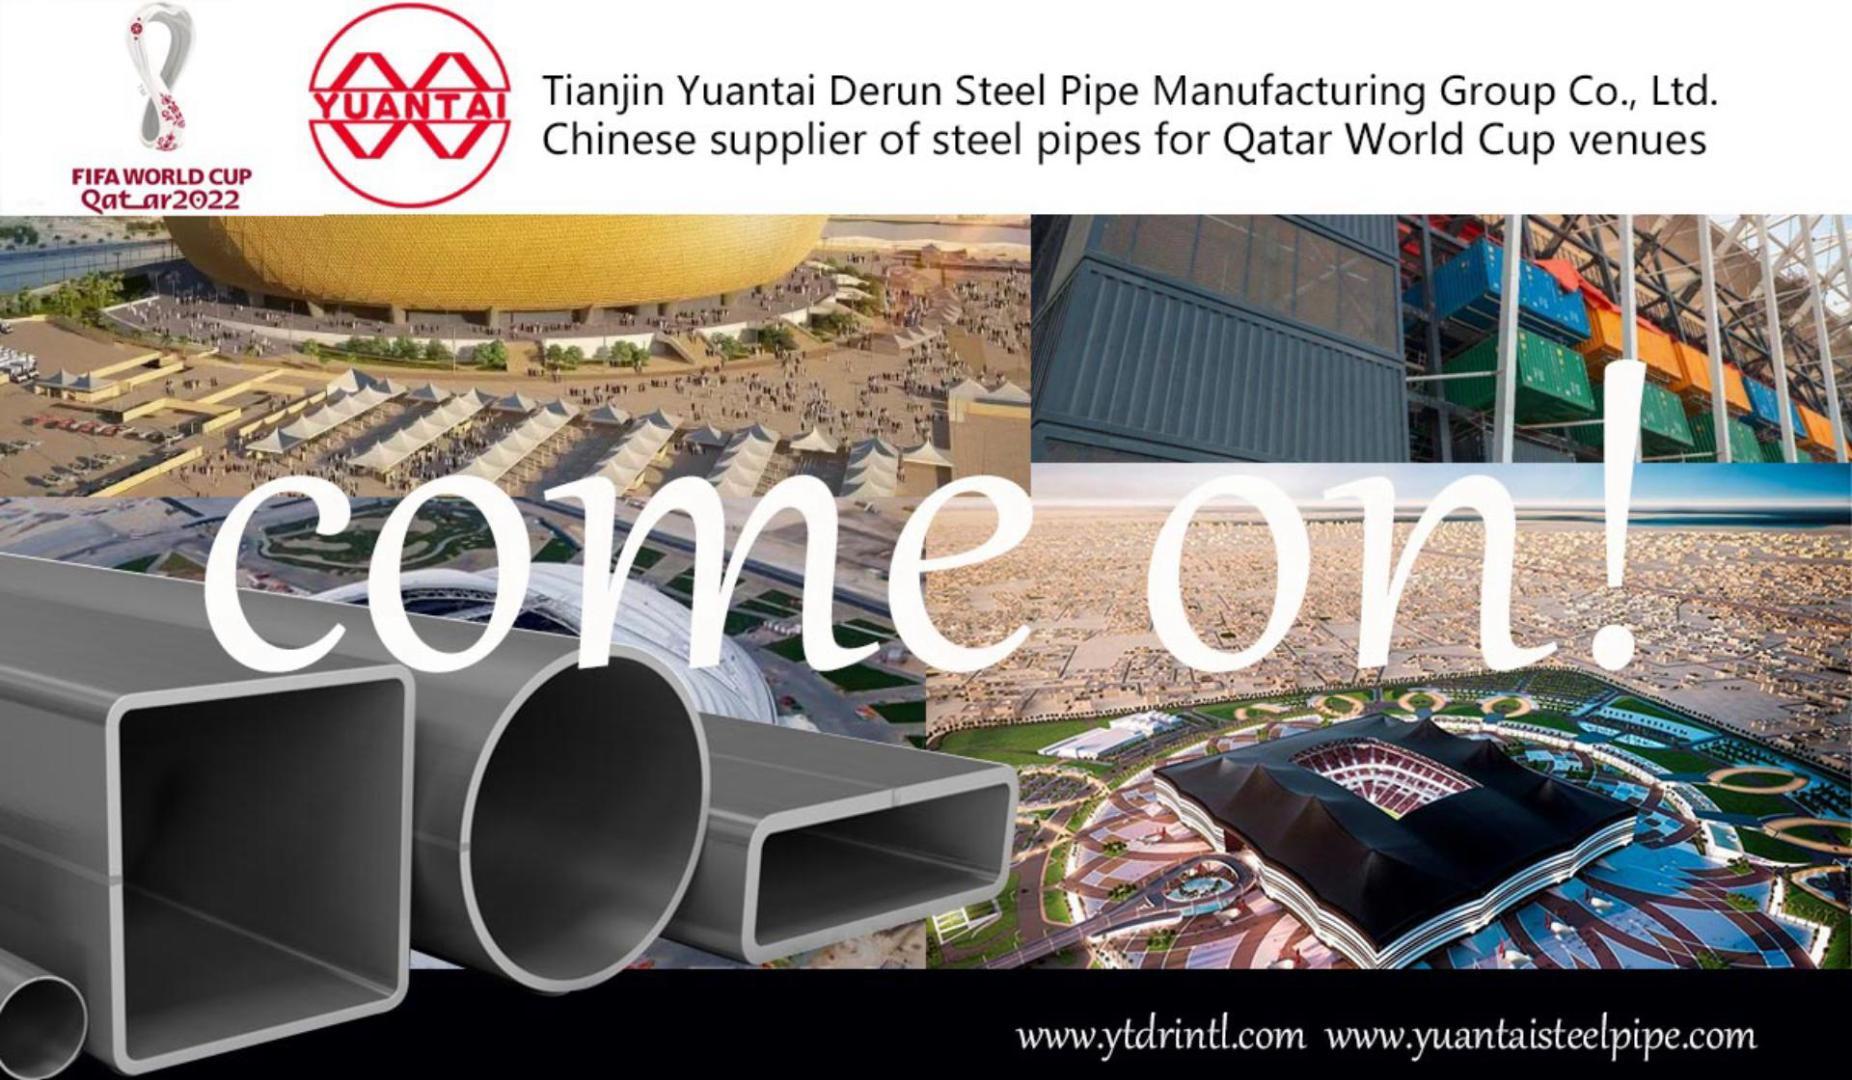 天津源泰德潤鋼管製造集團有限公司 卡塔爾世界盃場館項目供應細節